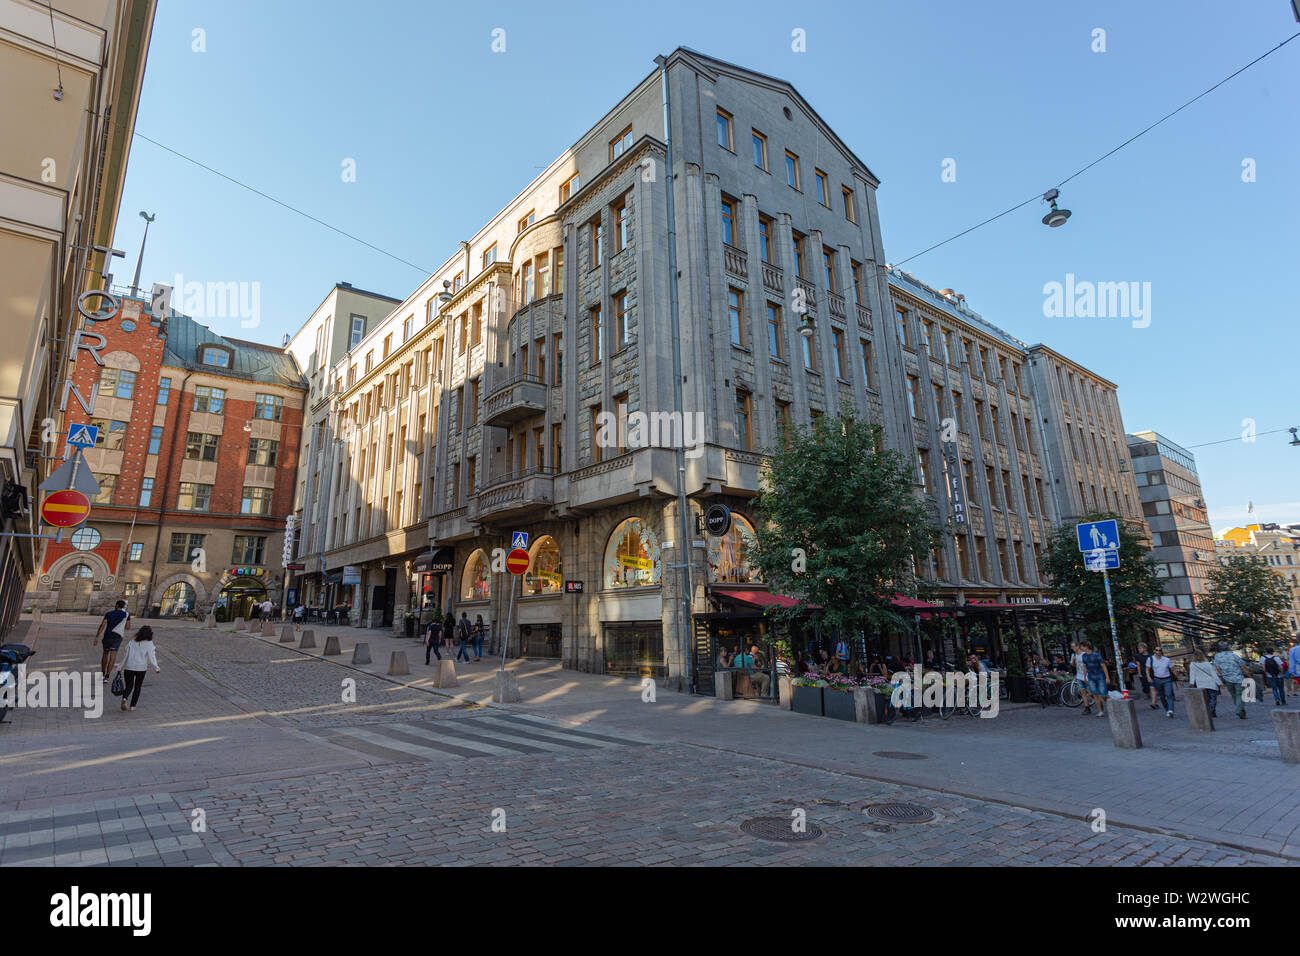 Helsinki, Finlandia - 12 Luglio 2018: Hotel Finn, insieme con numerosi negozi e caffetterie, si trova direttamente di fronte al centro storico Torni Hotel. Foto Stock